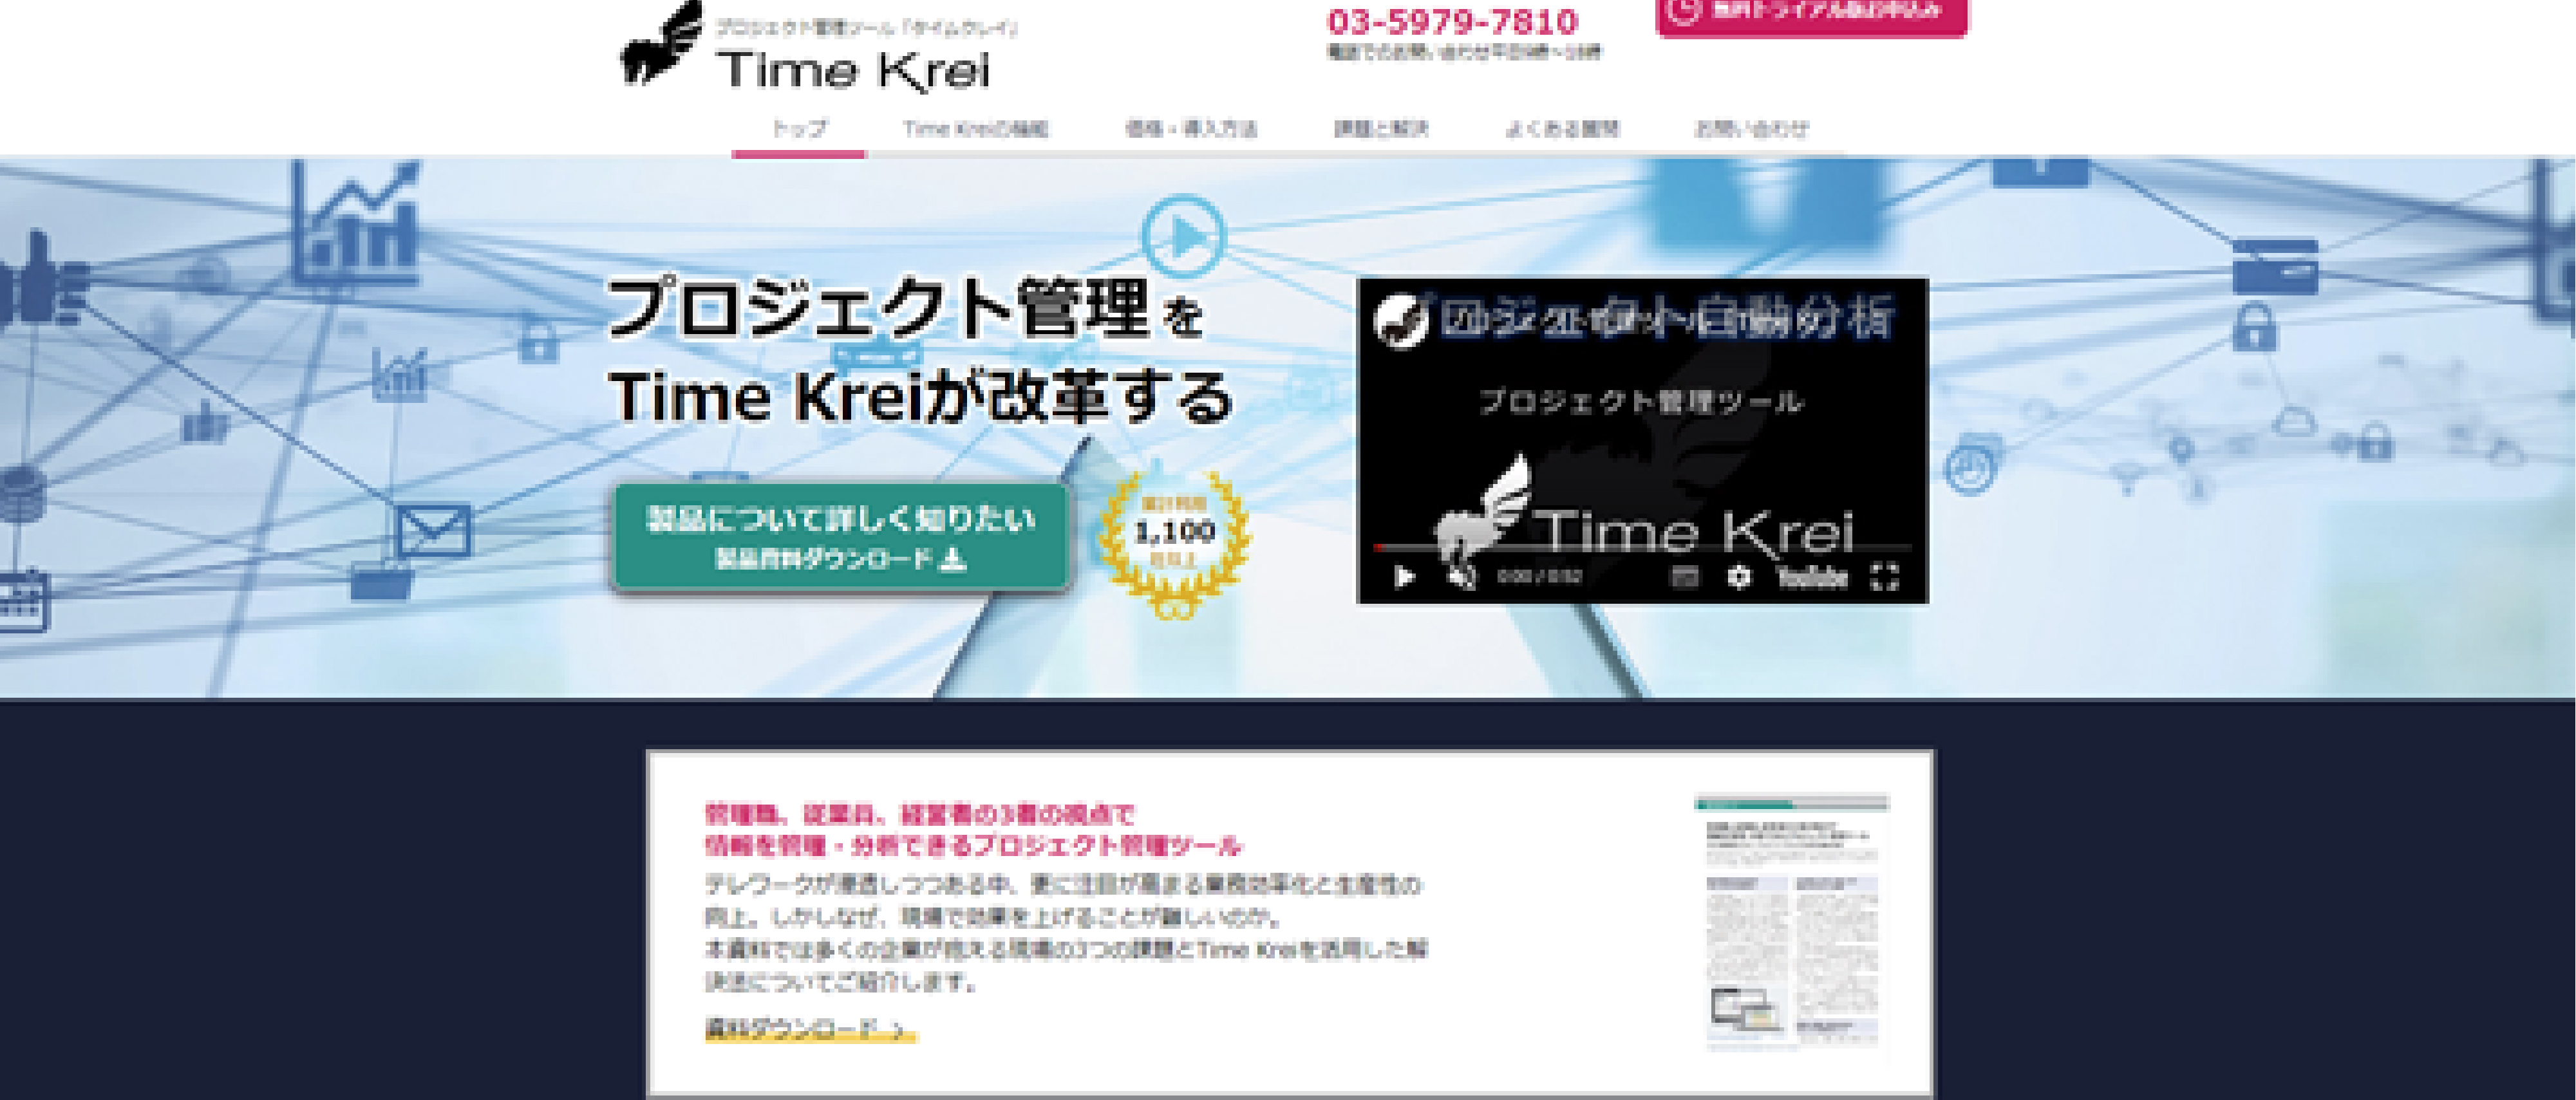 Time Krei